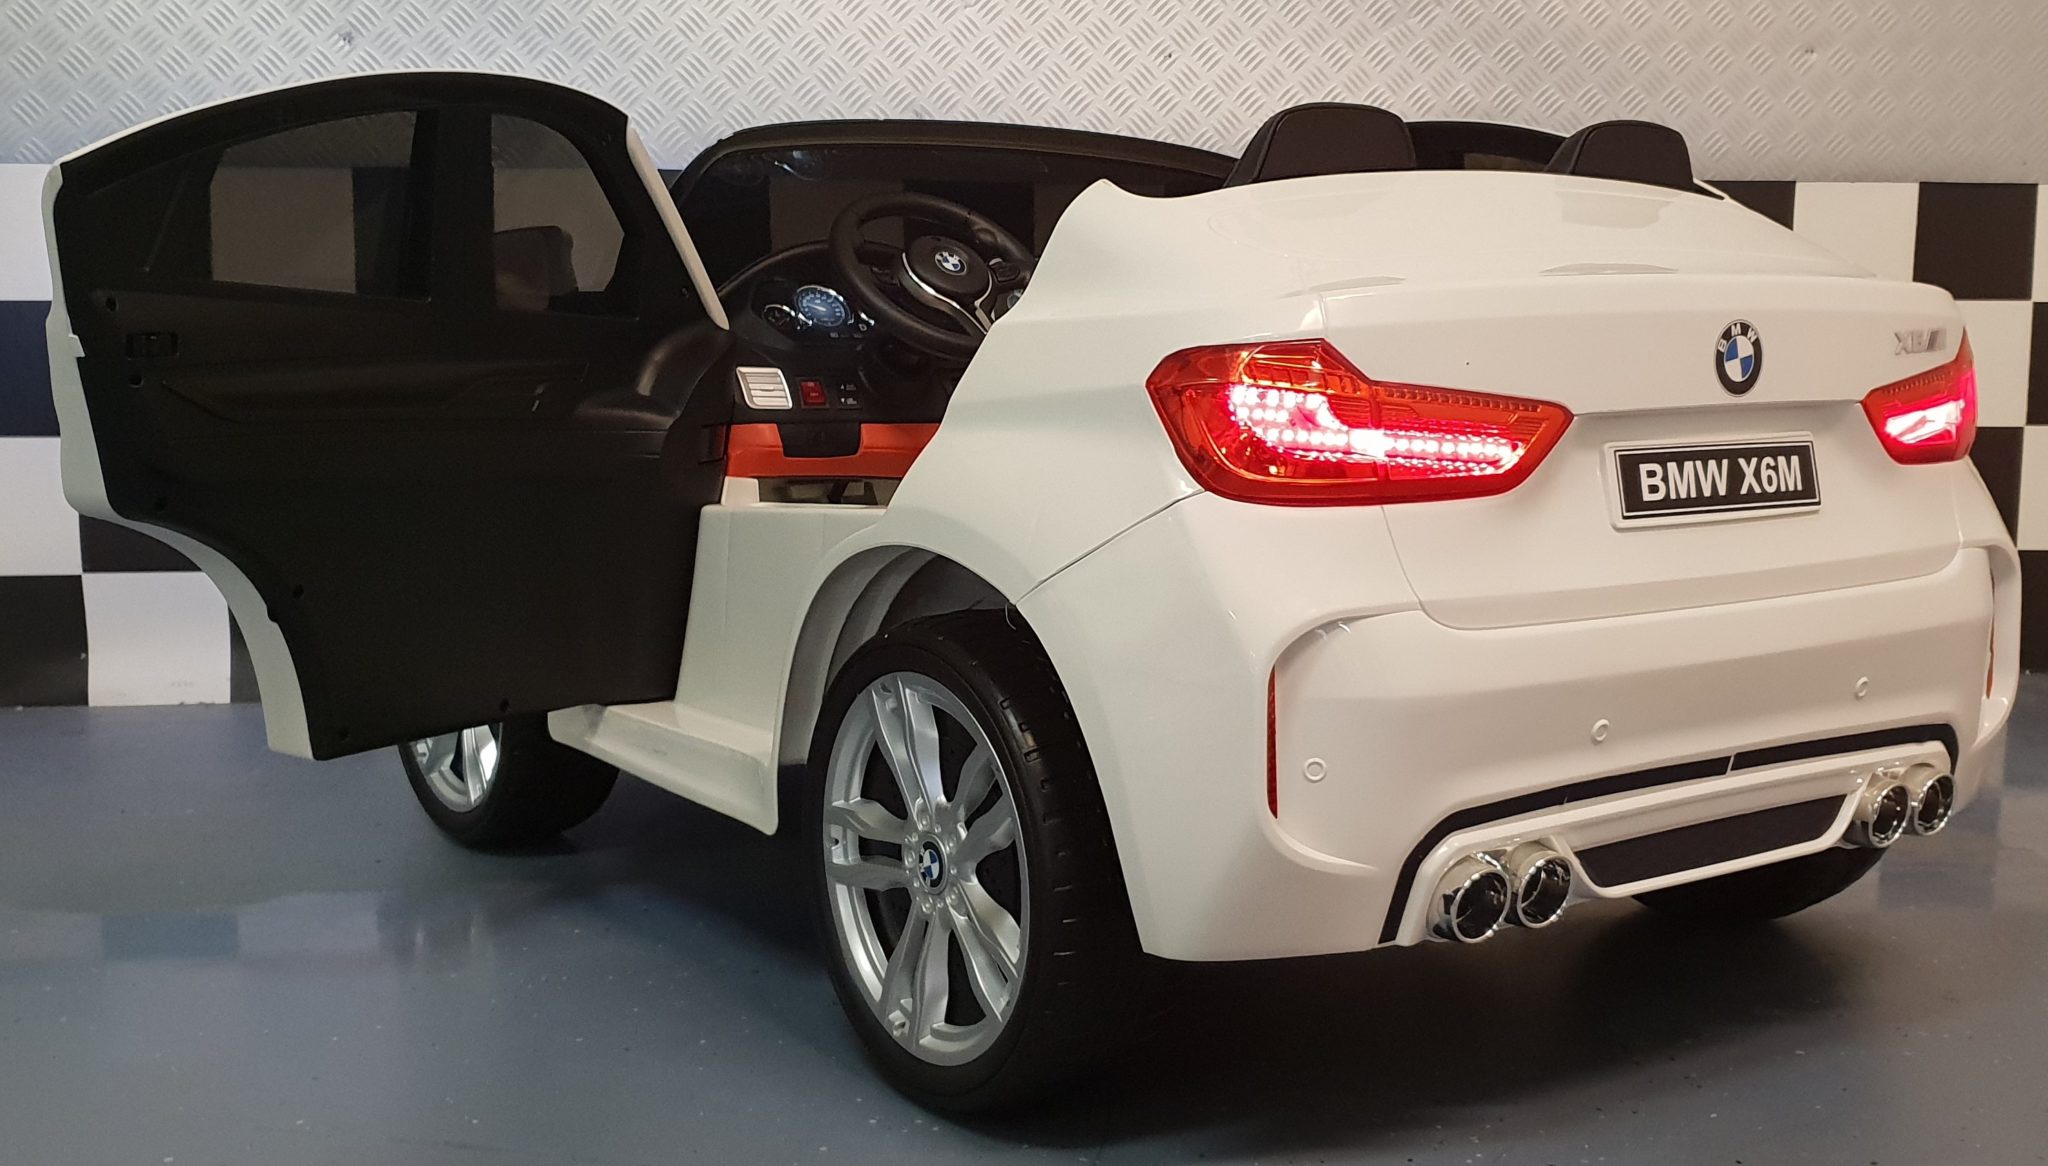 BMW-X6-M-serie-witte-kinderauto-12-volt